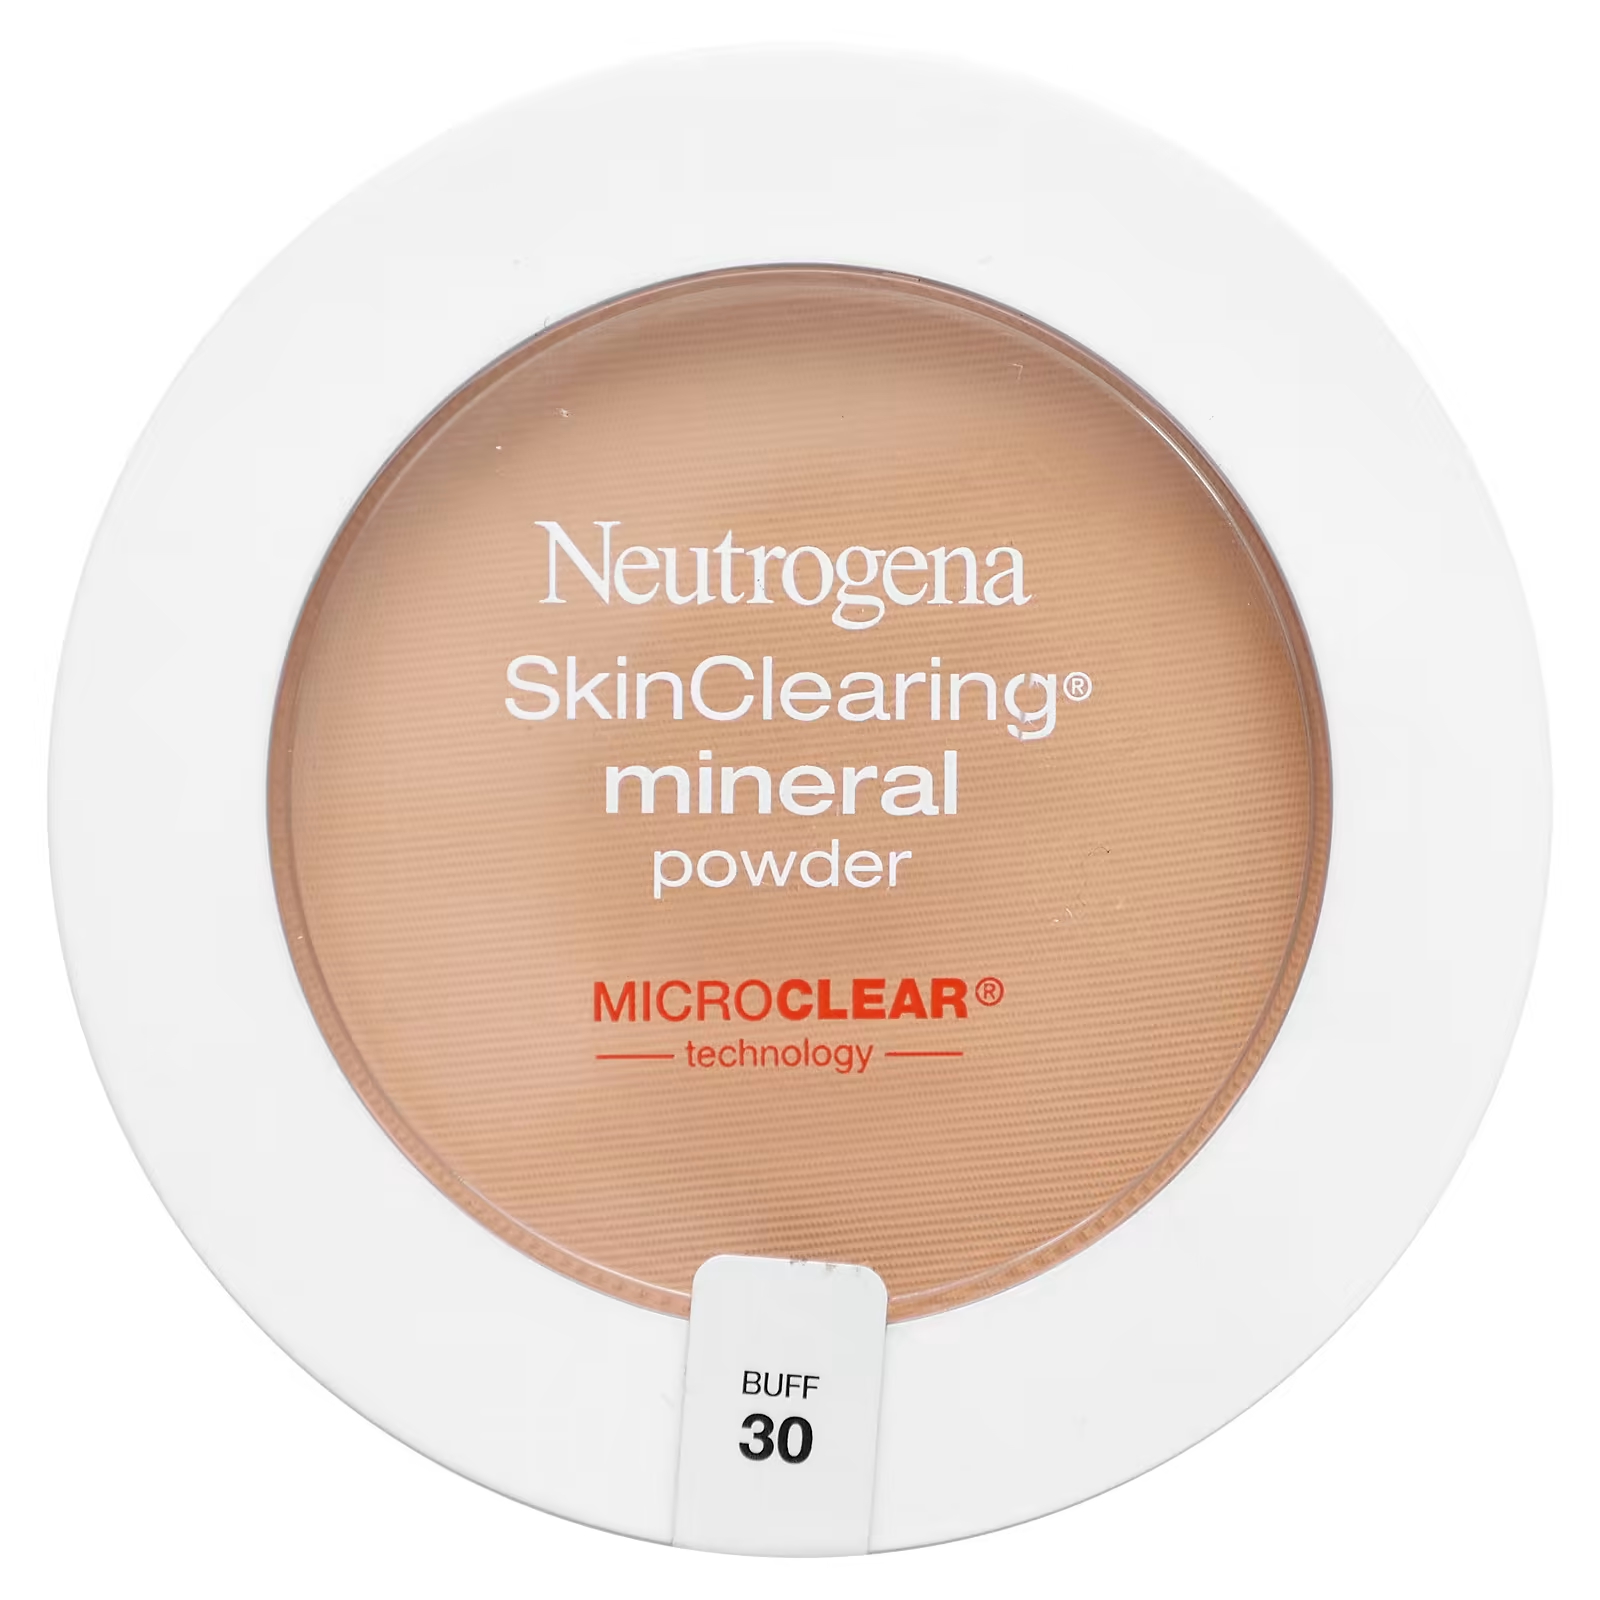 Пудра минеральная Neutrogena SkinClearing для очищения кожи neutrogena минеральная пудра для очищения кожи натуральная слоновая кость 20 11 г 0 38 унции